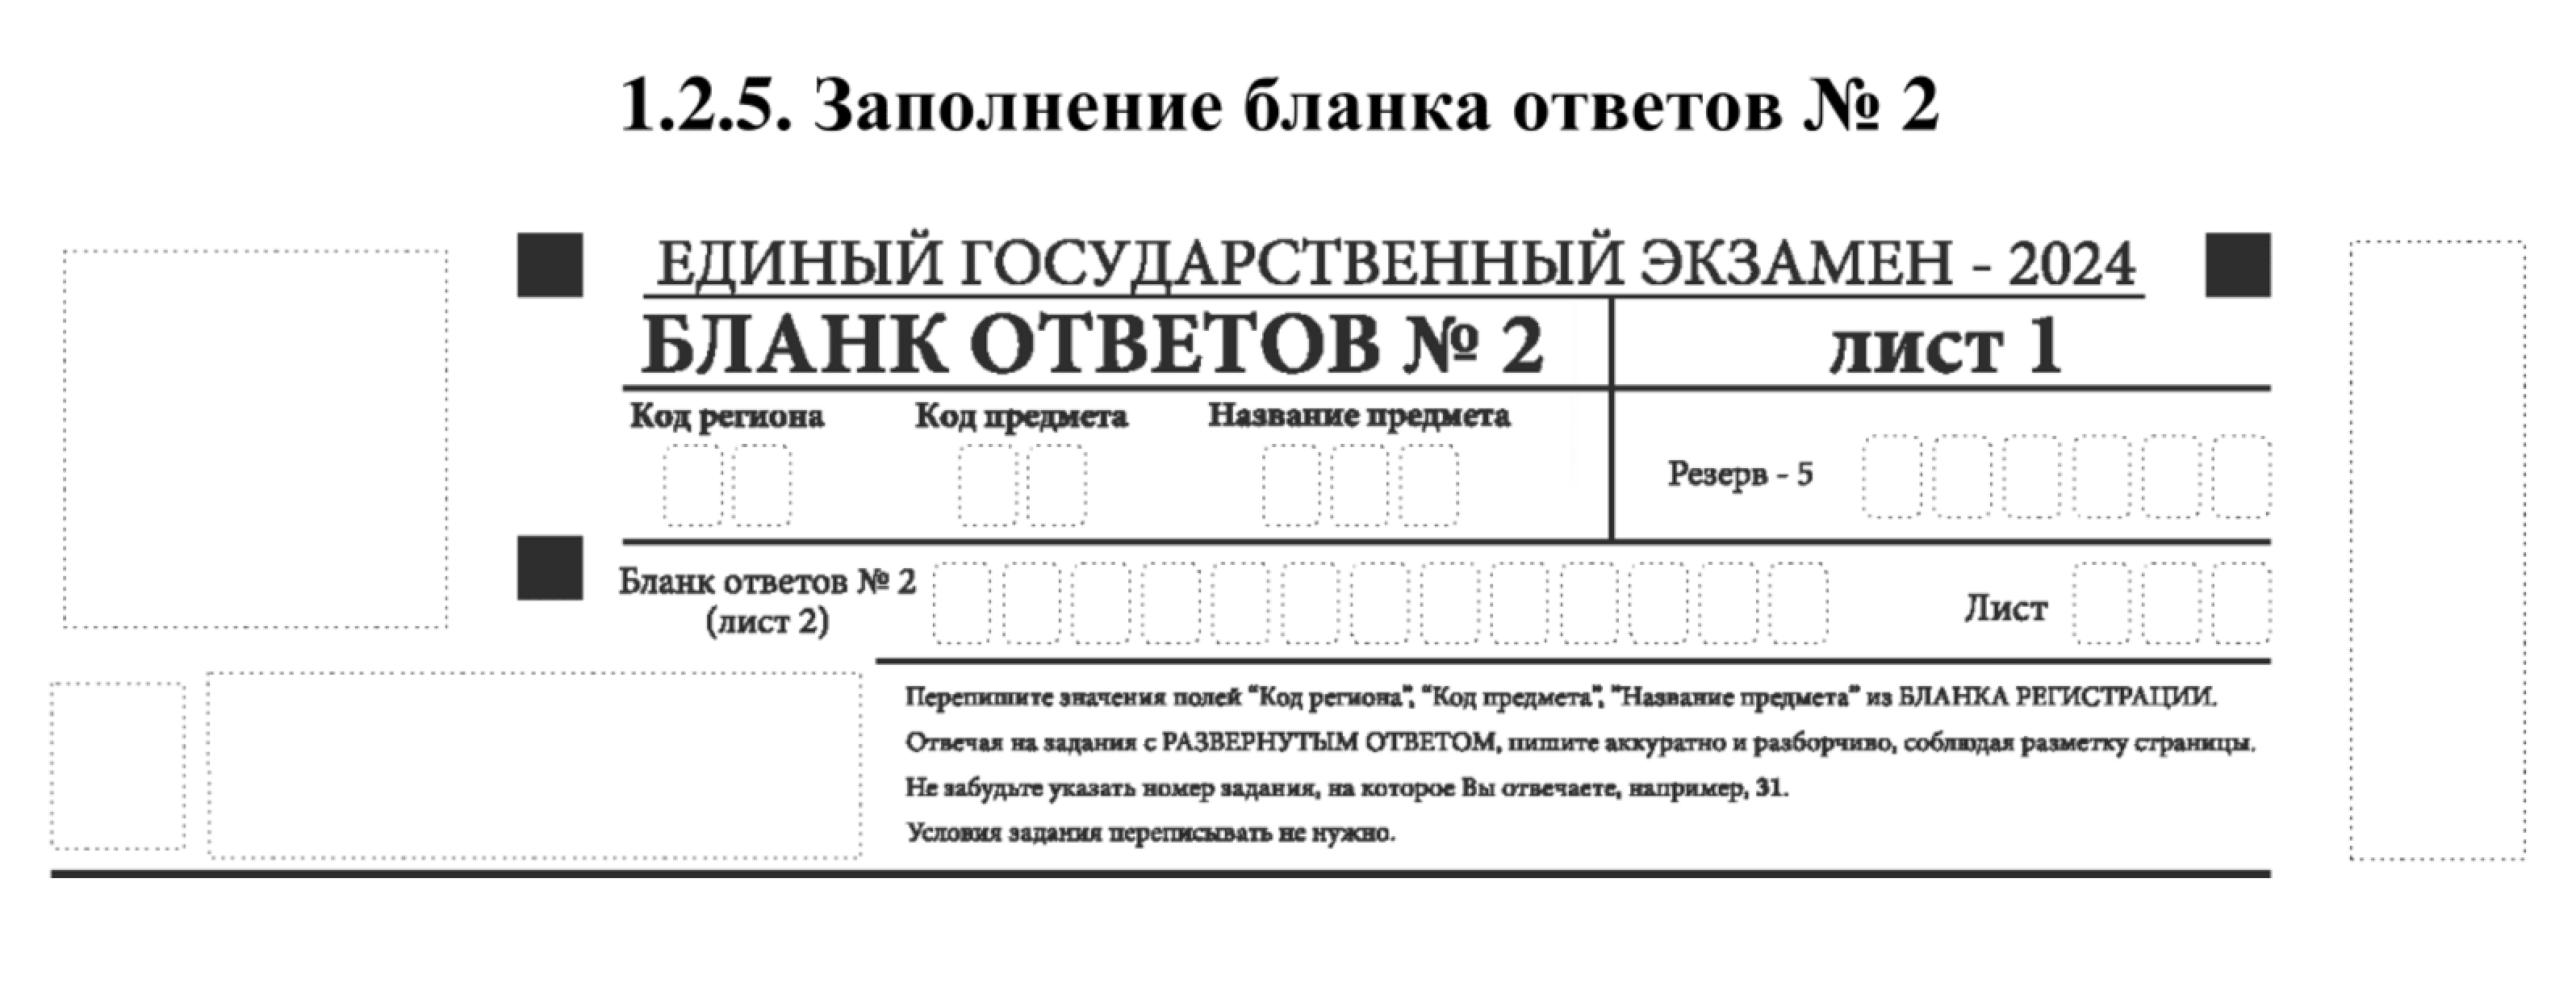 В верхней части бланка ответов № 2 не нужно ничего вписывать ни на первом, ни на втором листе, если об этом не скажут организаторы. Источник: obrnadzor.gov.ru